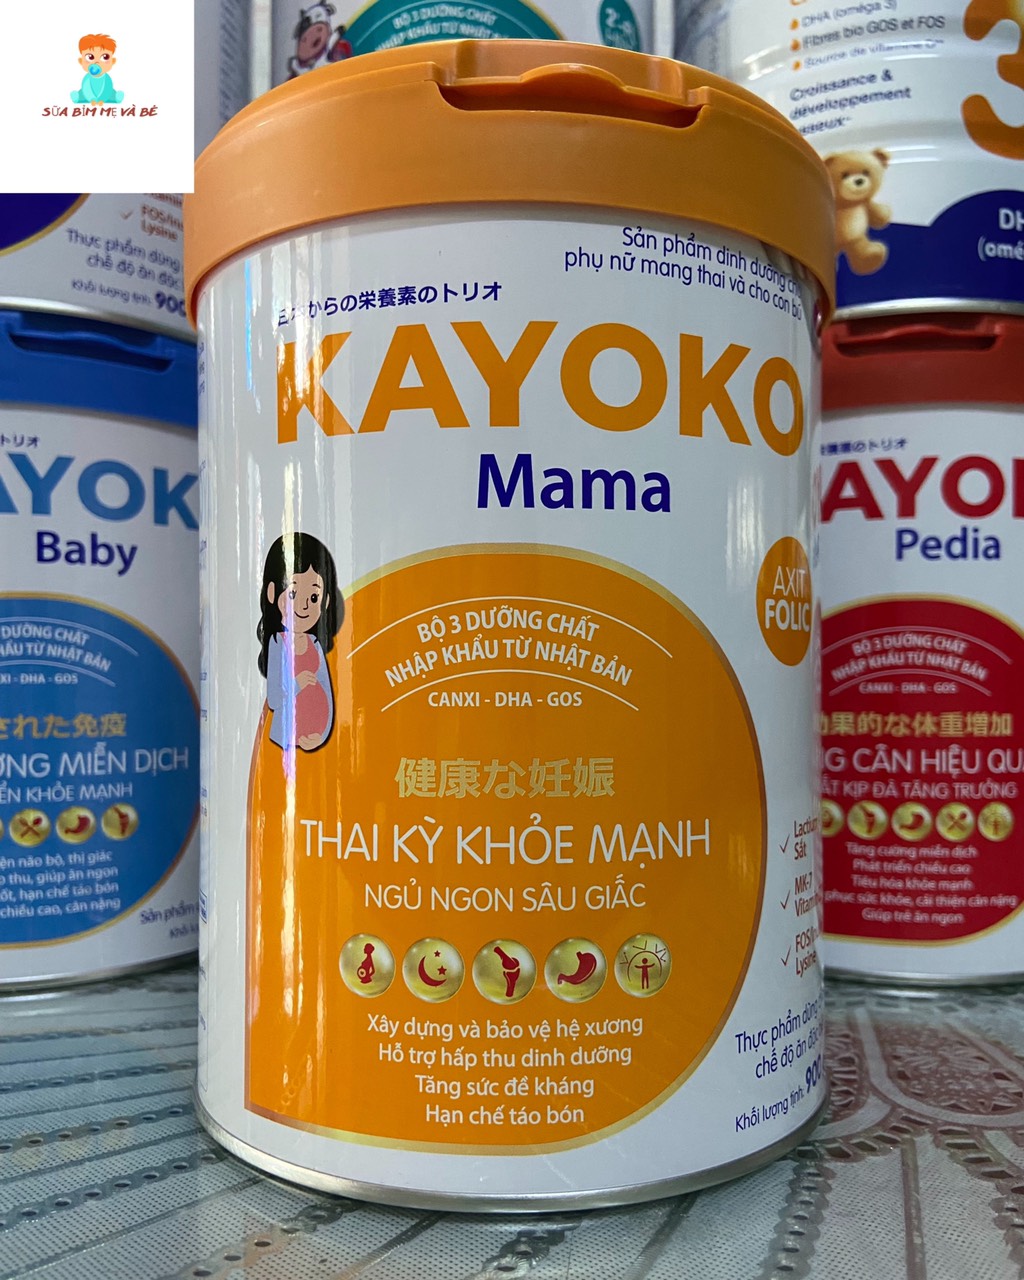 Date mới Sữa Kayoko Mama công nghệ Nhật 900g